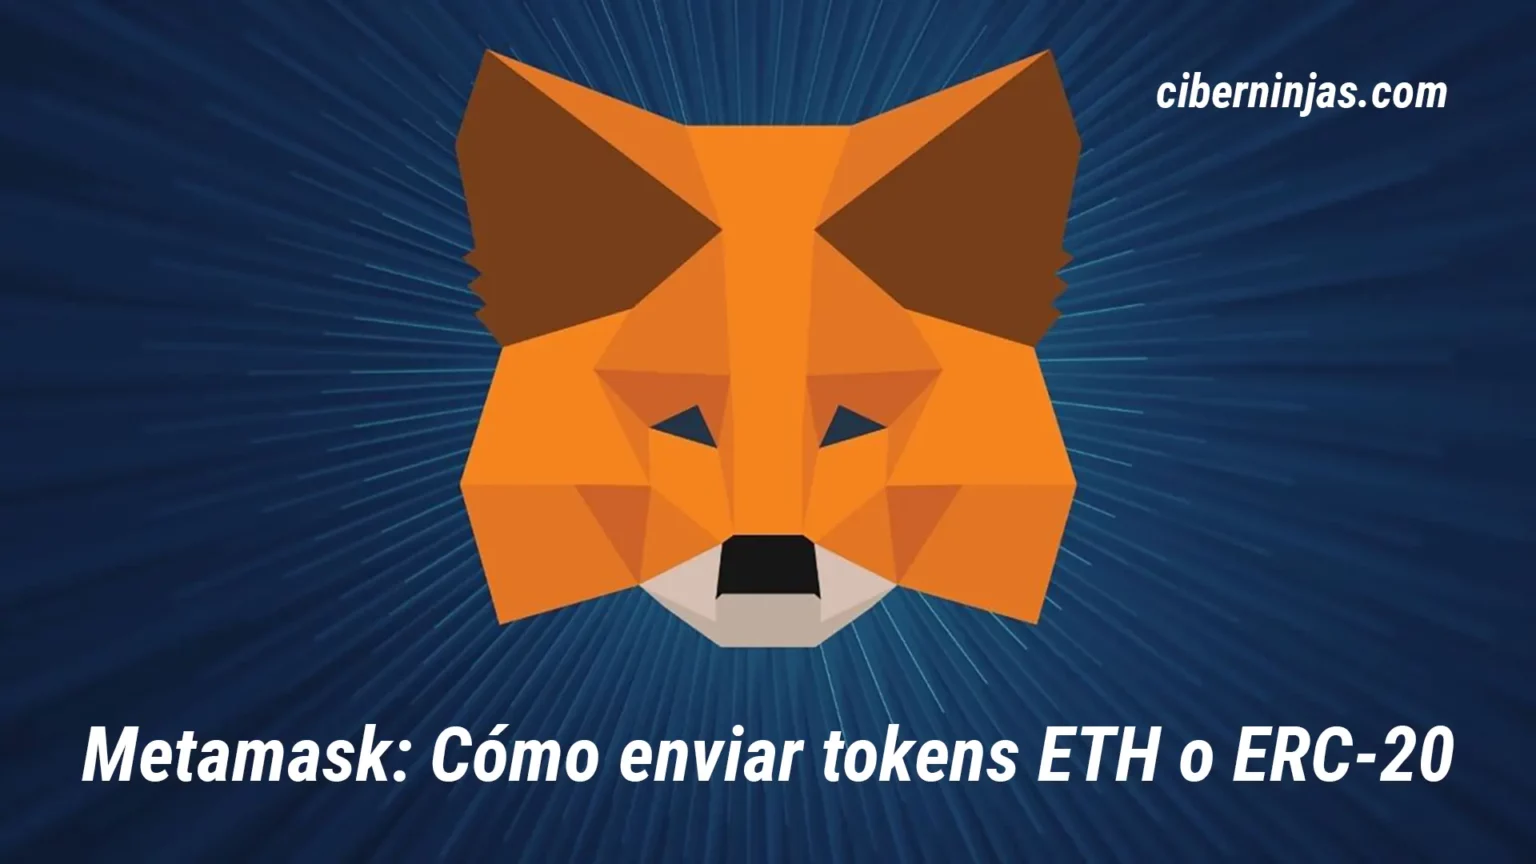 ¿Cómo enviar tokens ETH y ERC-20 desde tu billetera MetaMask?